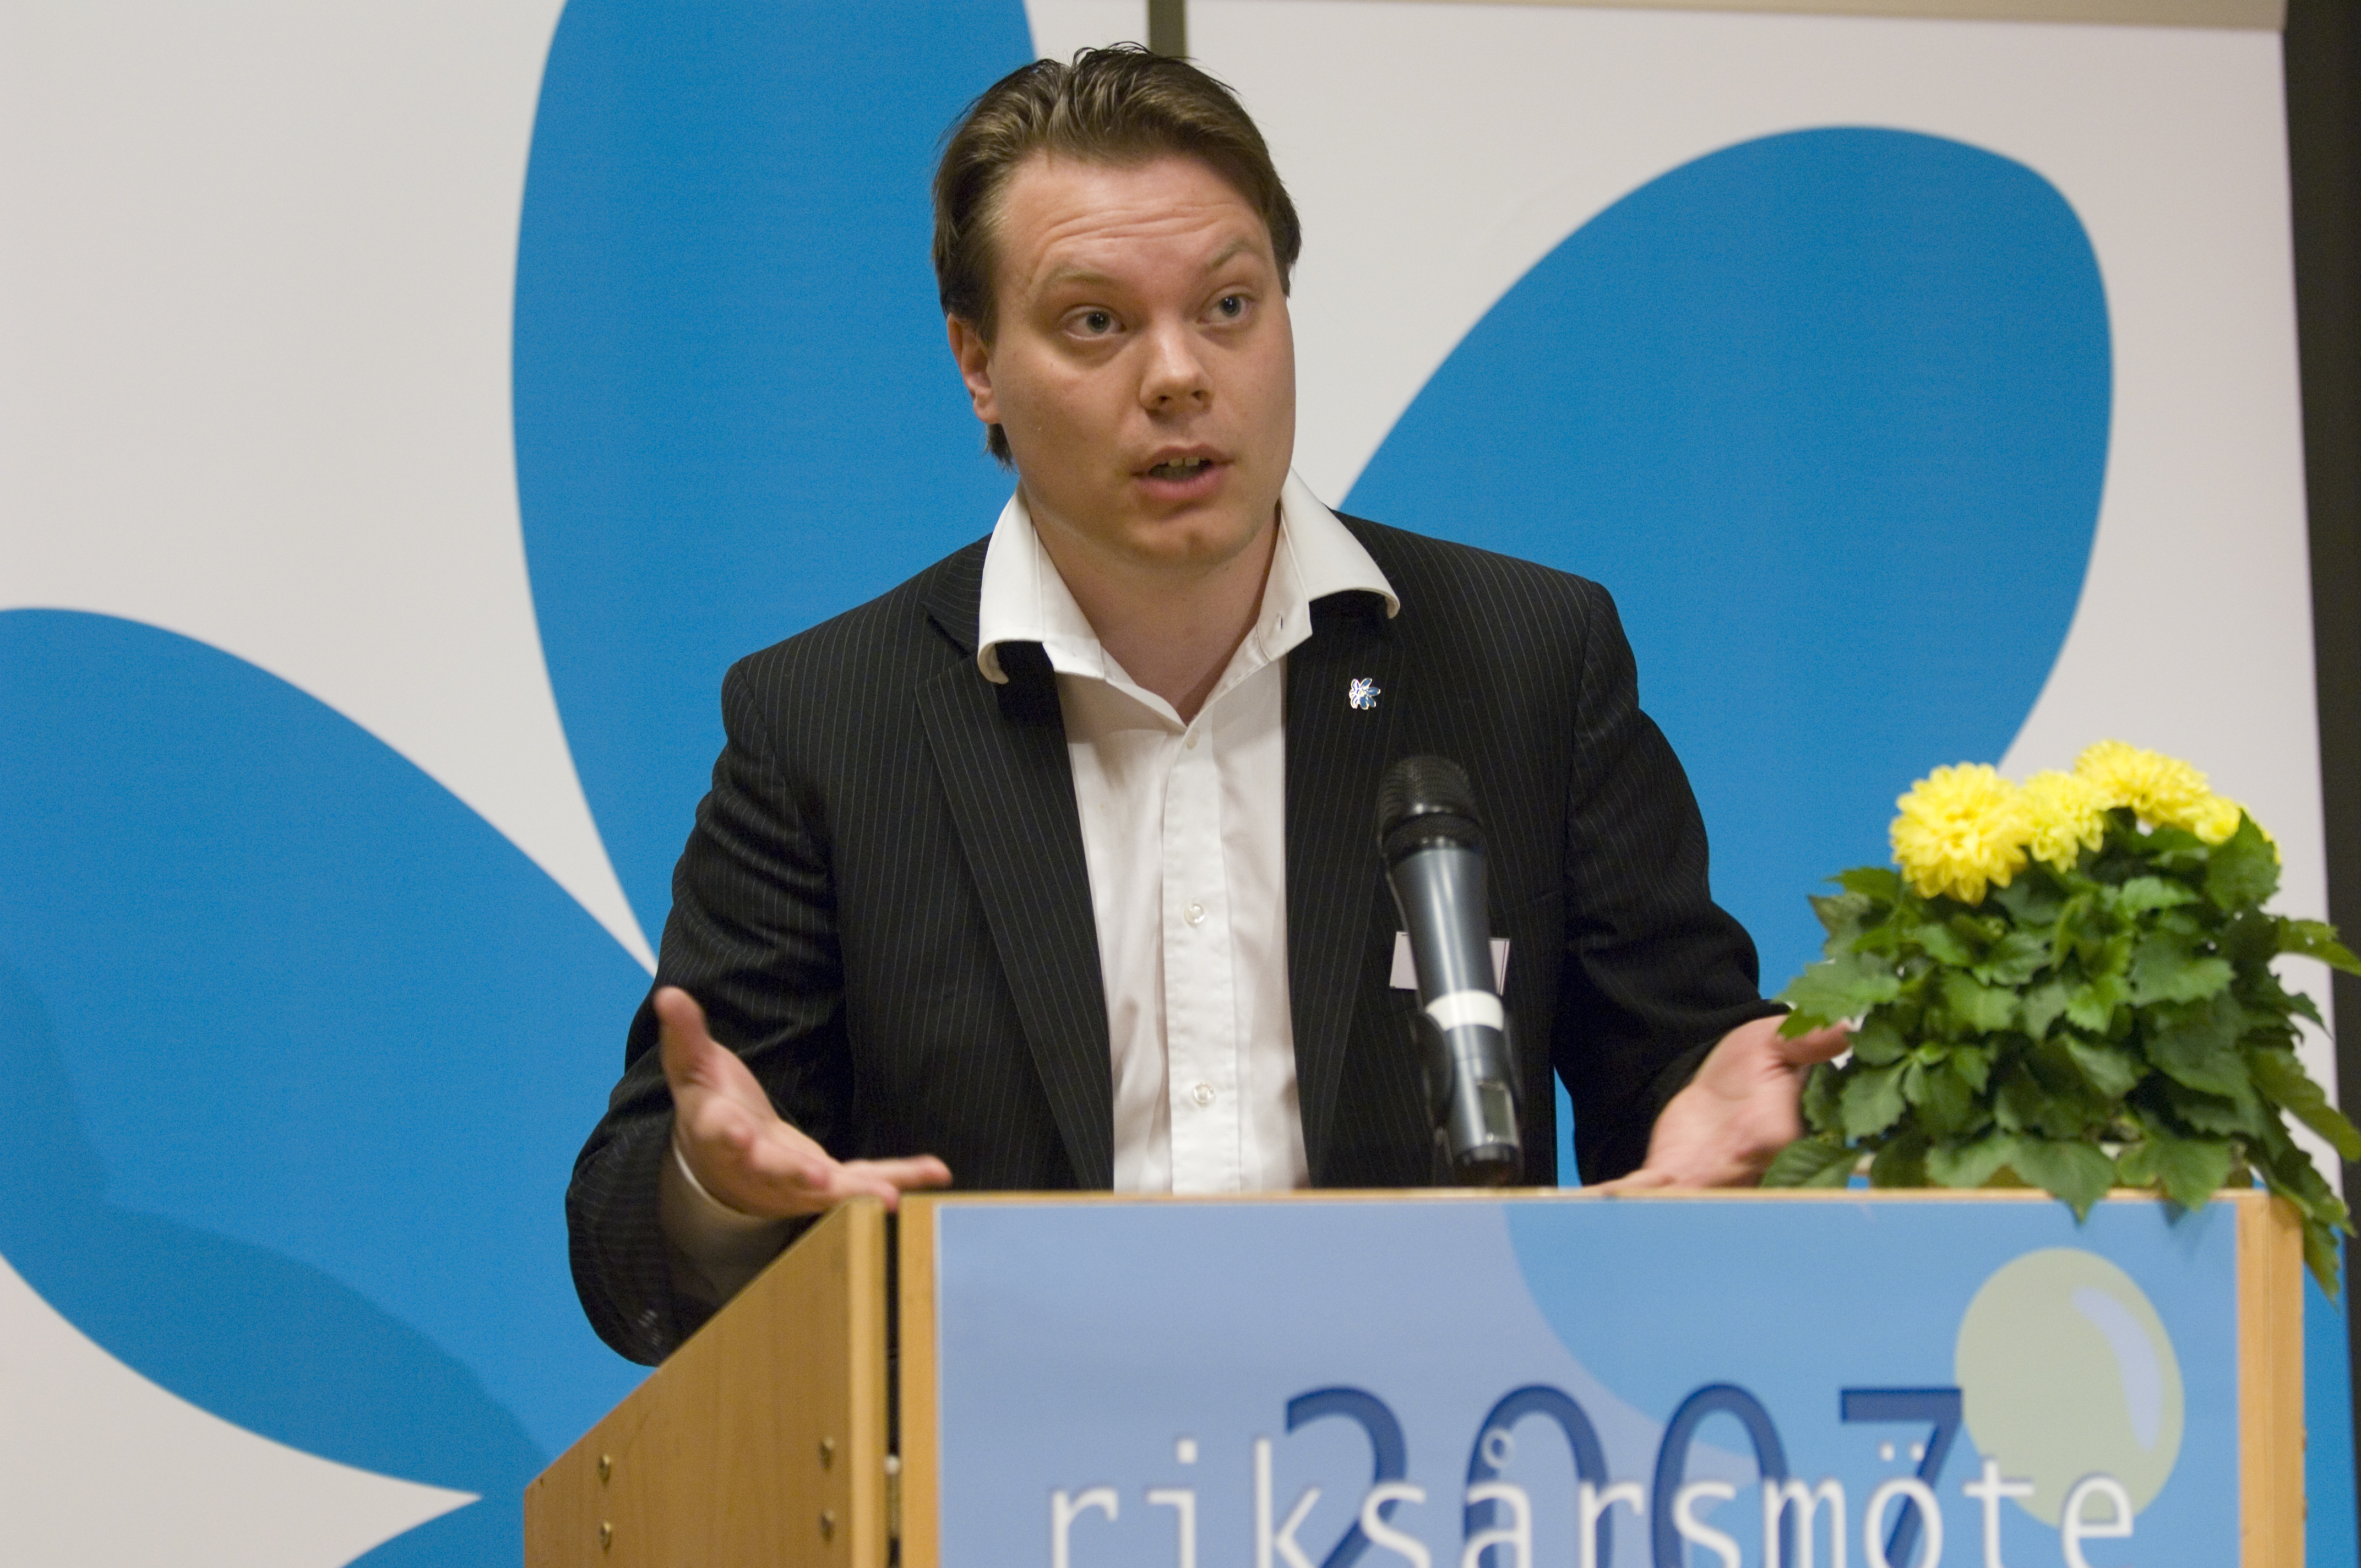 Det var sverigedemokraternas presschef Martin Kinnunen meddelade på torsdagen att hotet polisanmäls.